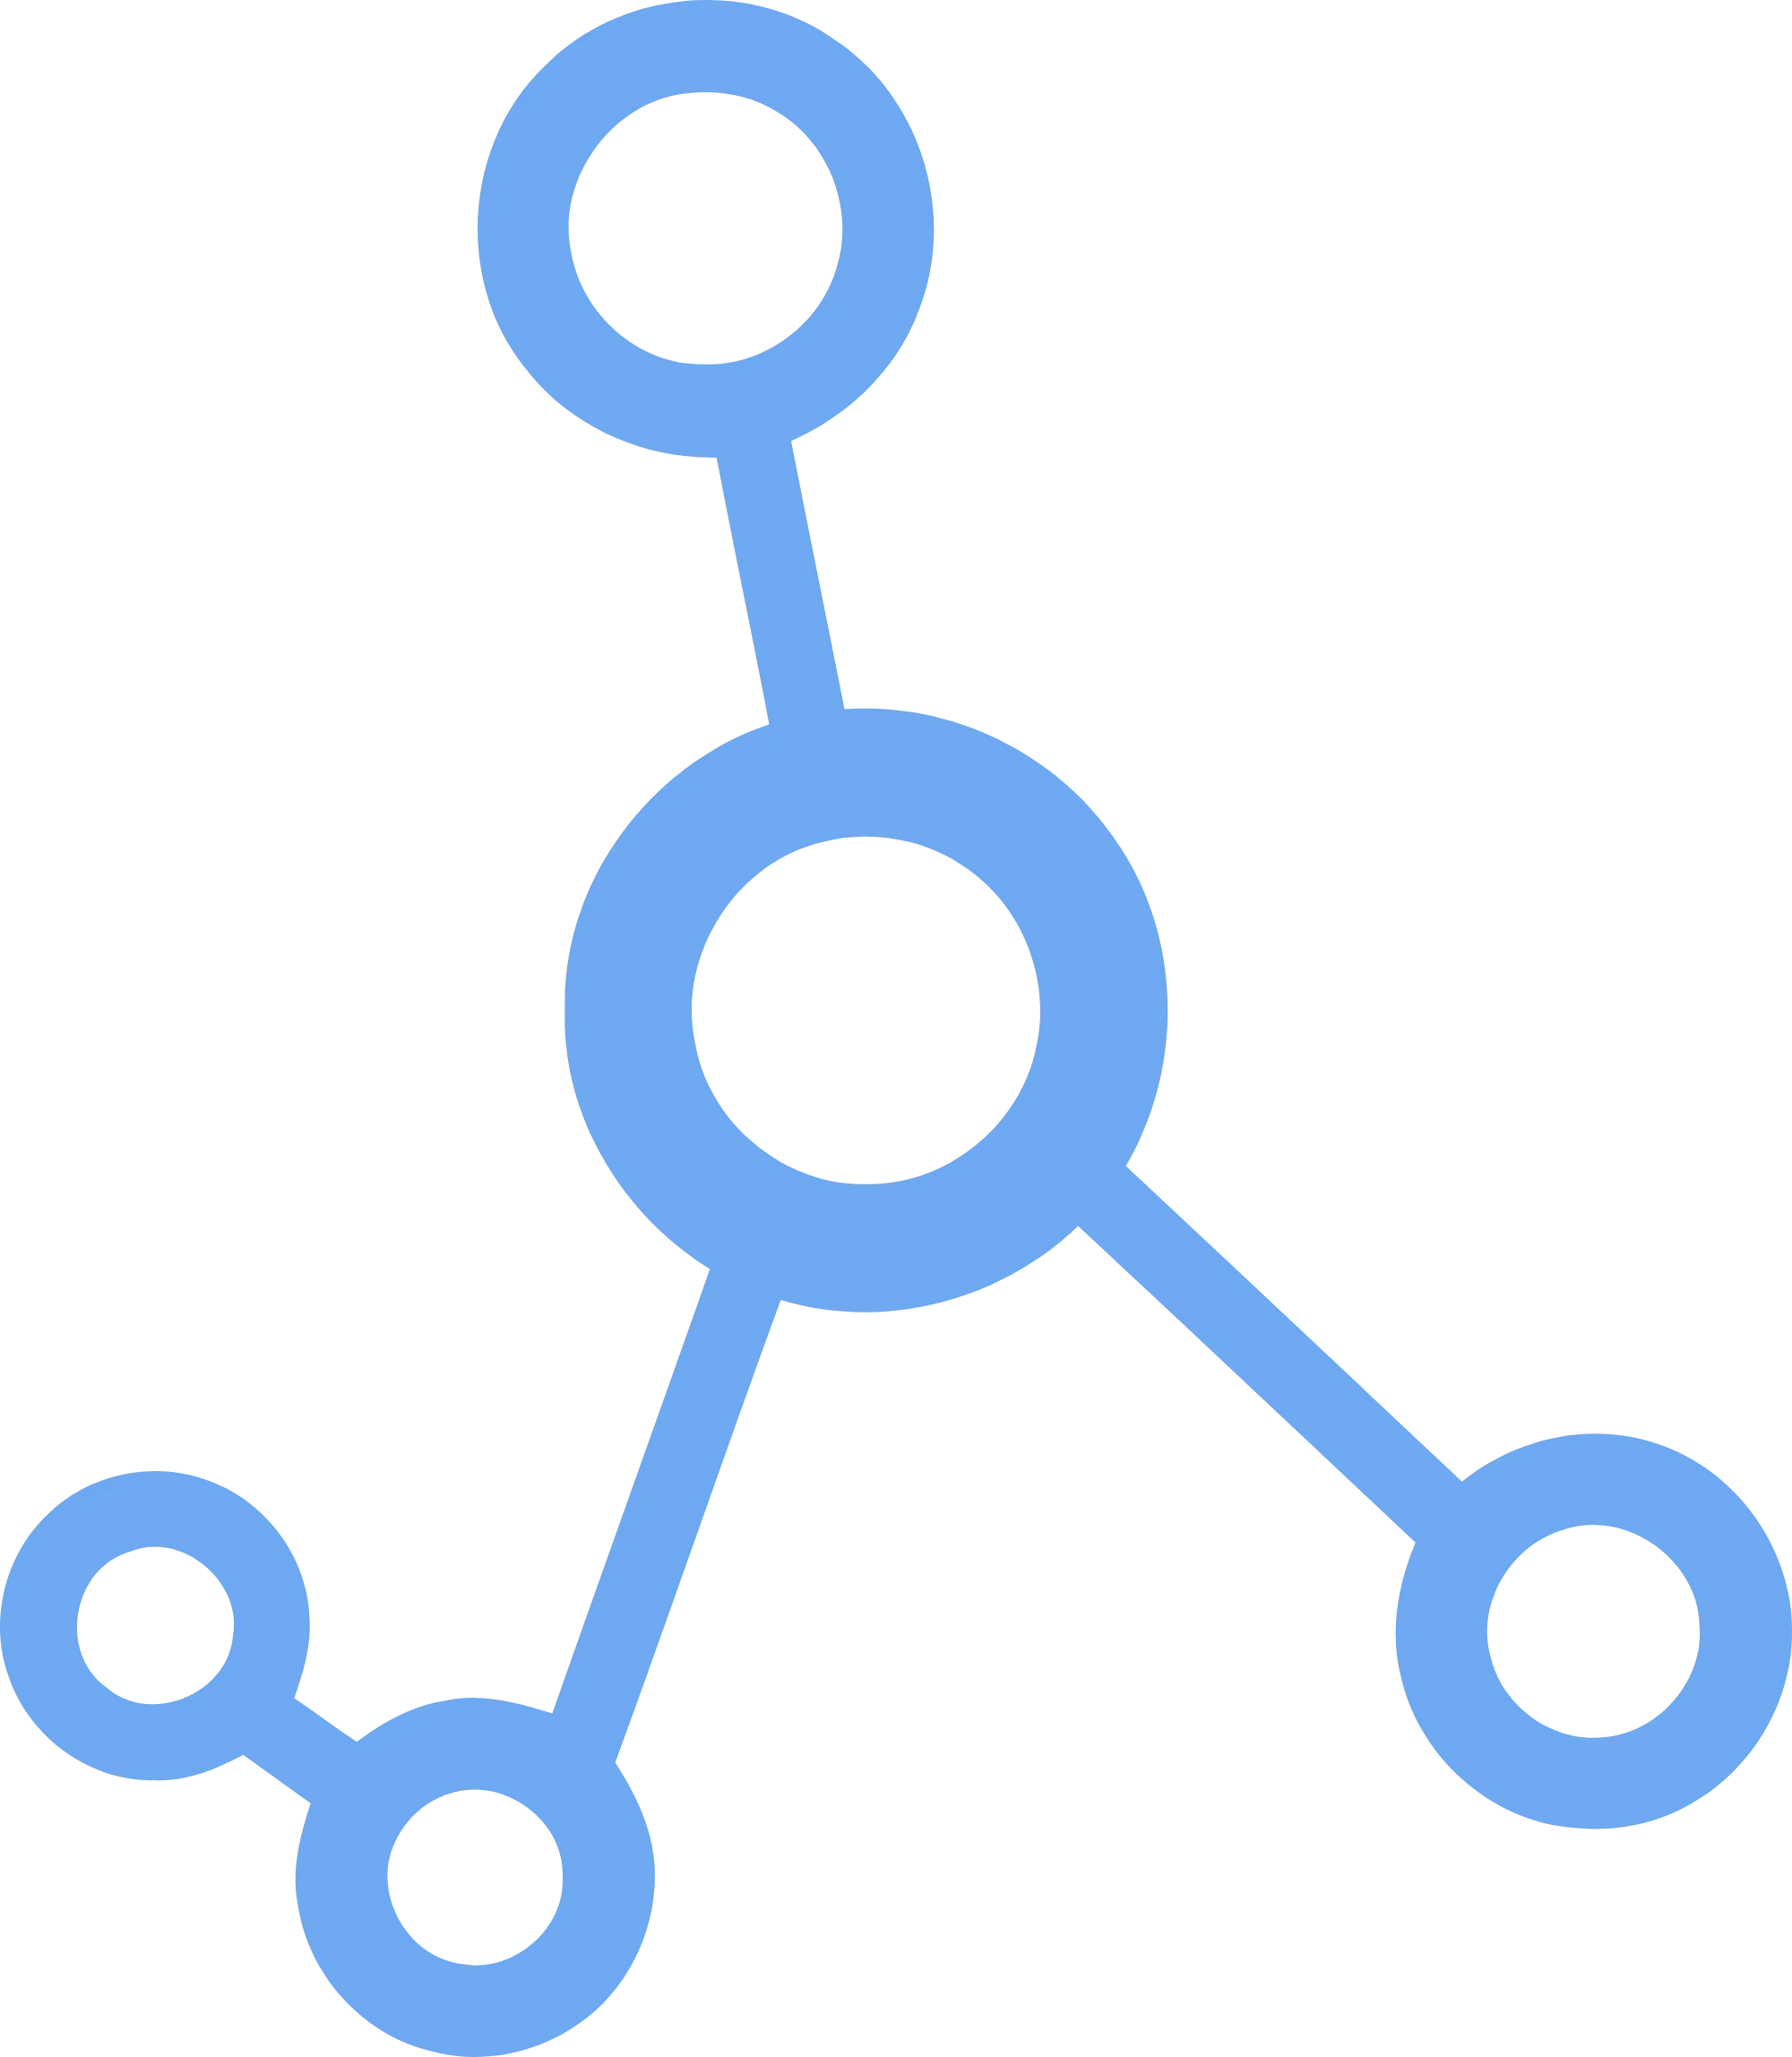 Molecular Future logo in svg format